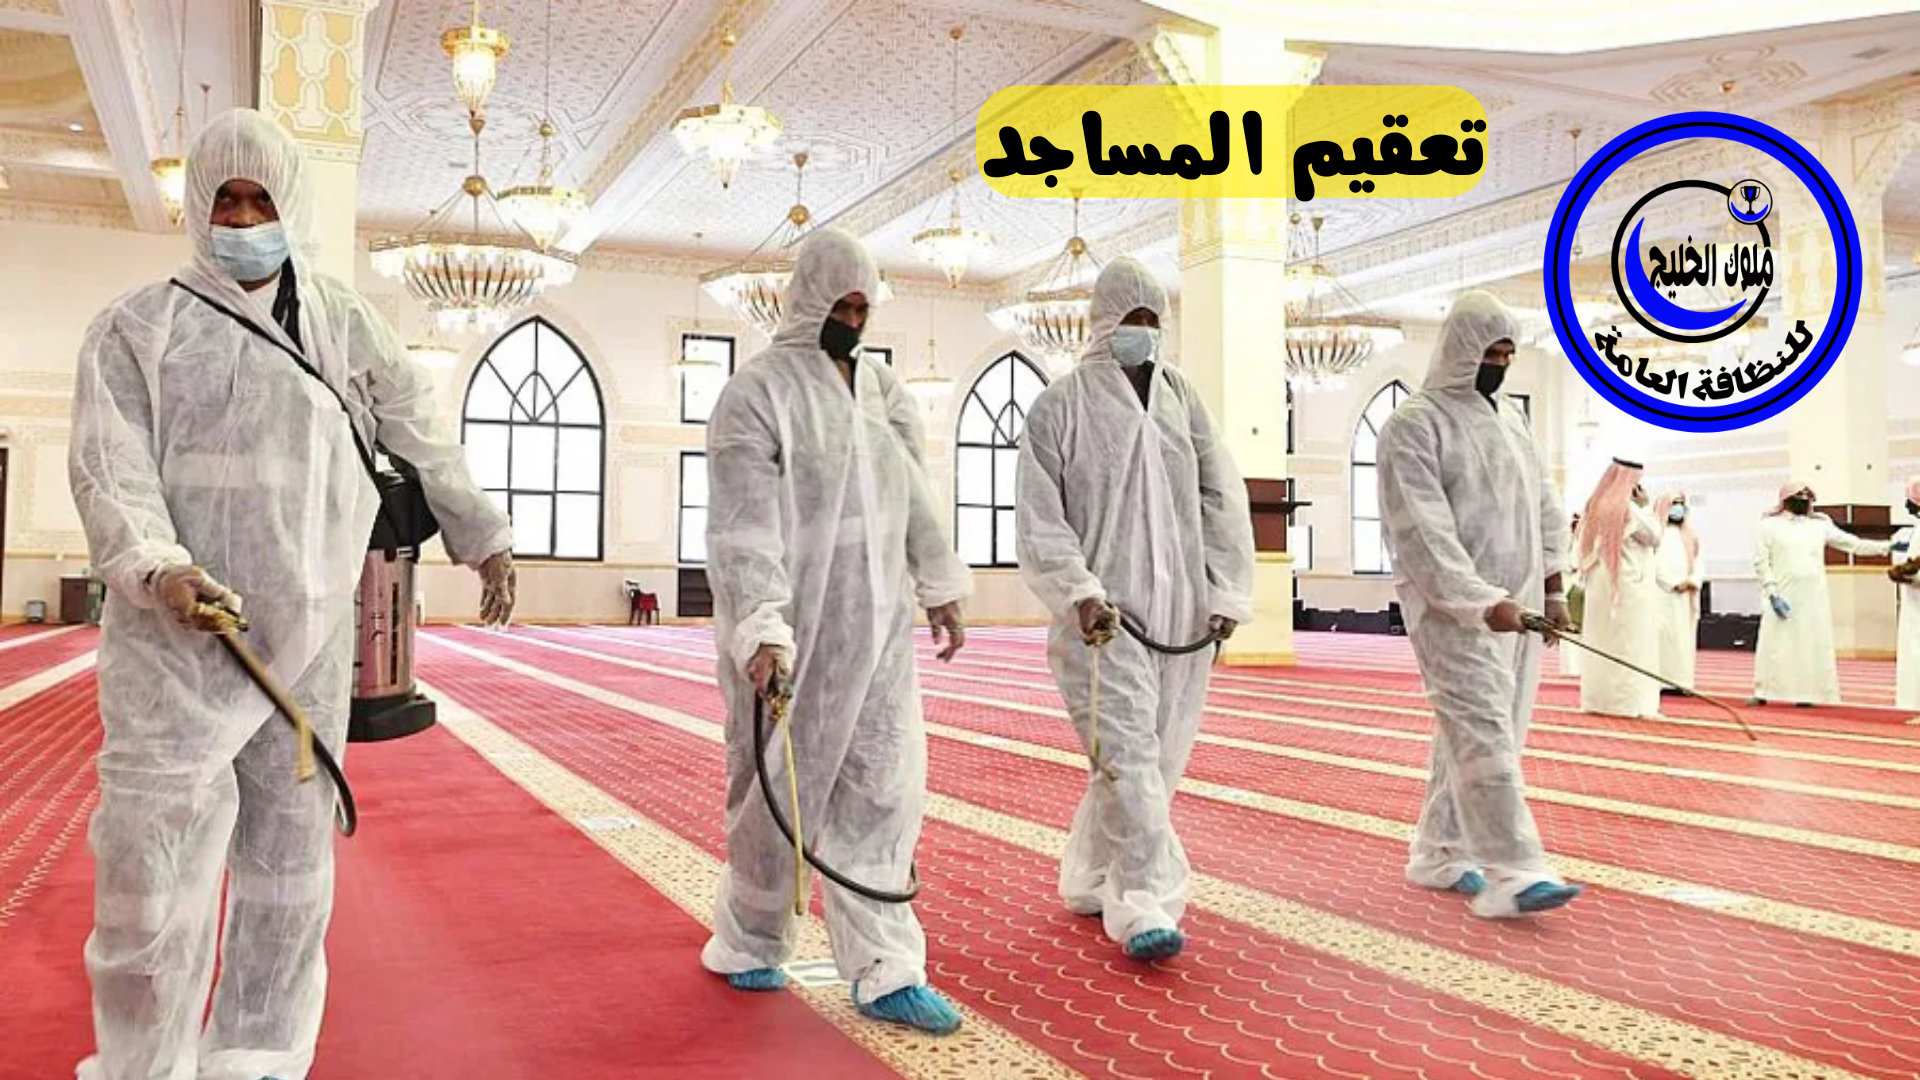 شركة تنظيف مساجد بخميس مشيط 0500686439 اقوي عروض وخصومات شهر رمضان المبارك 